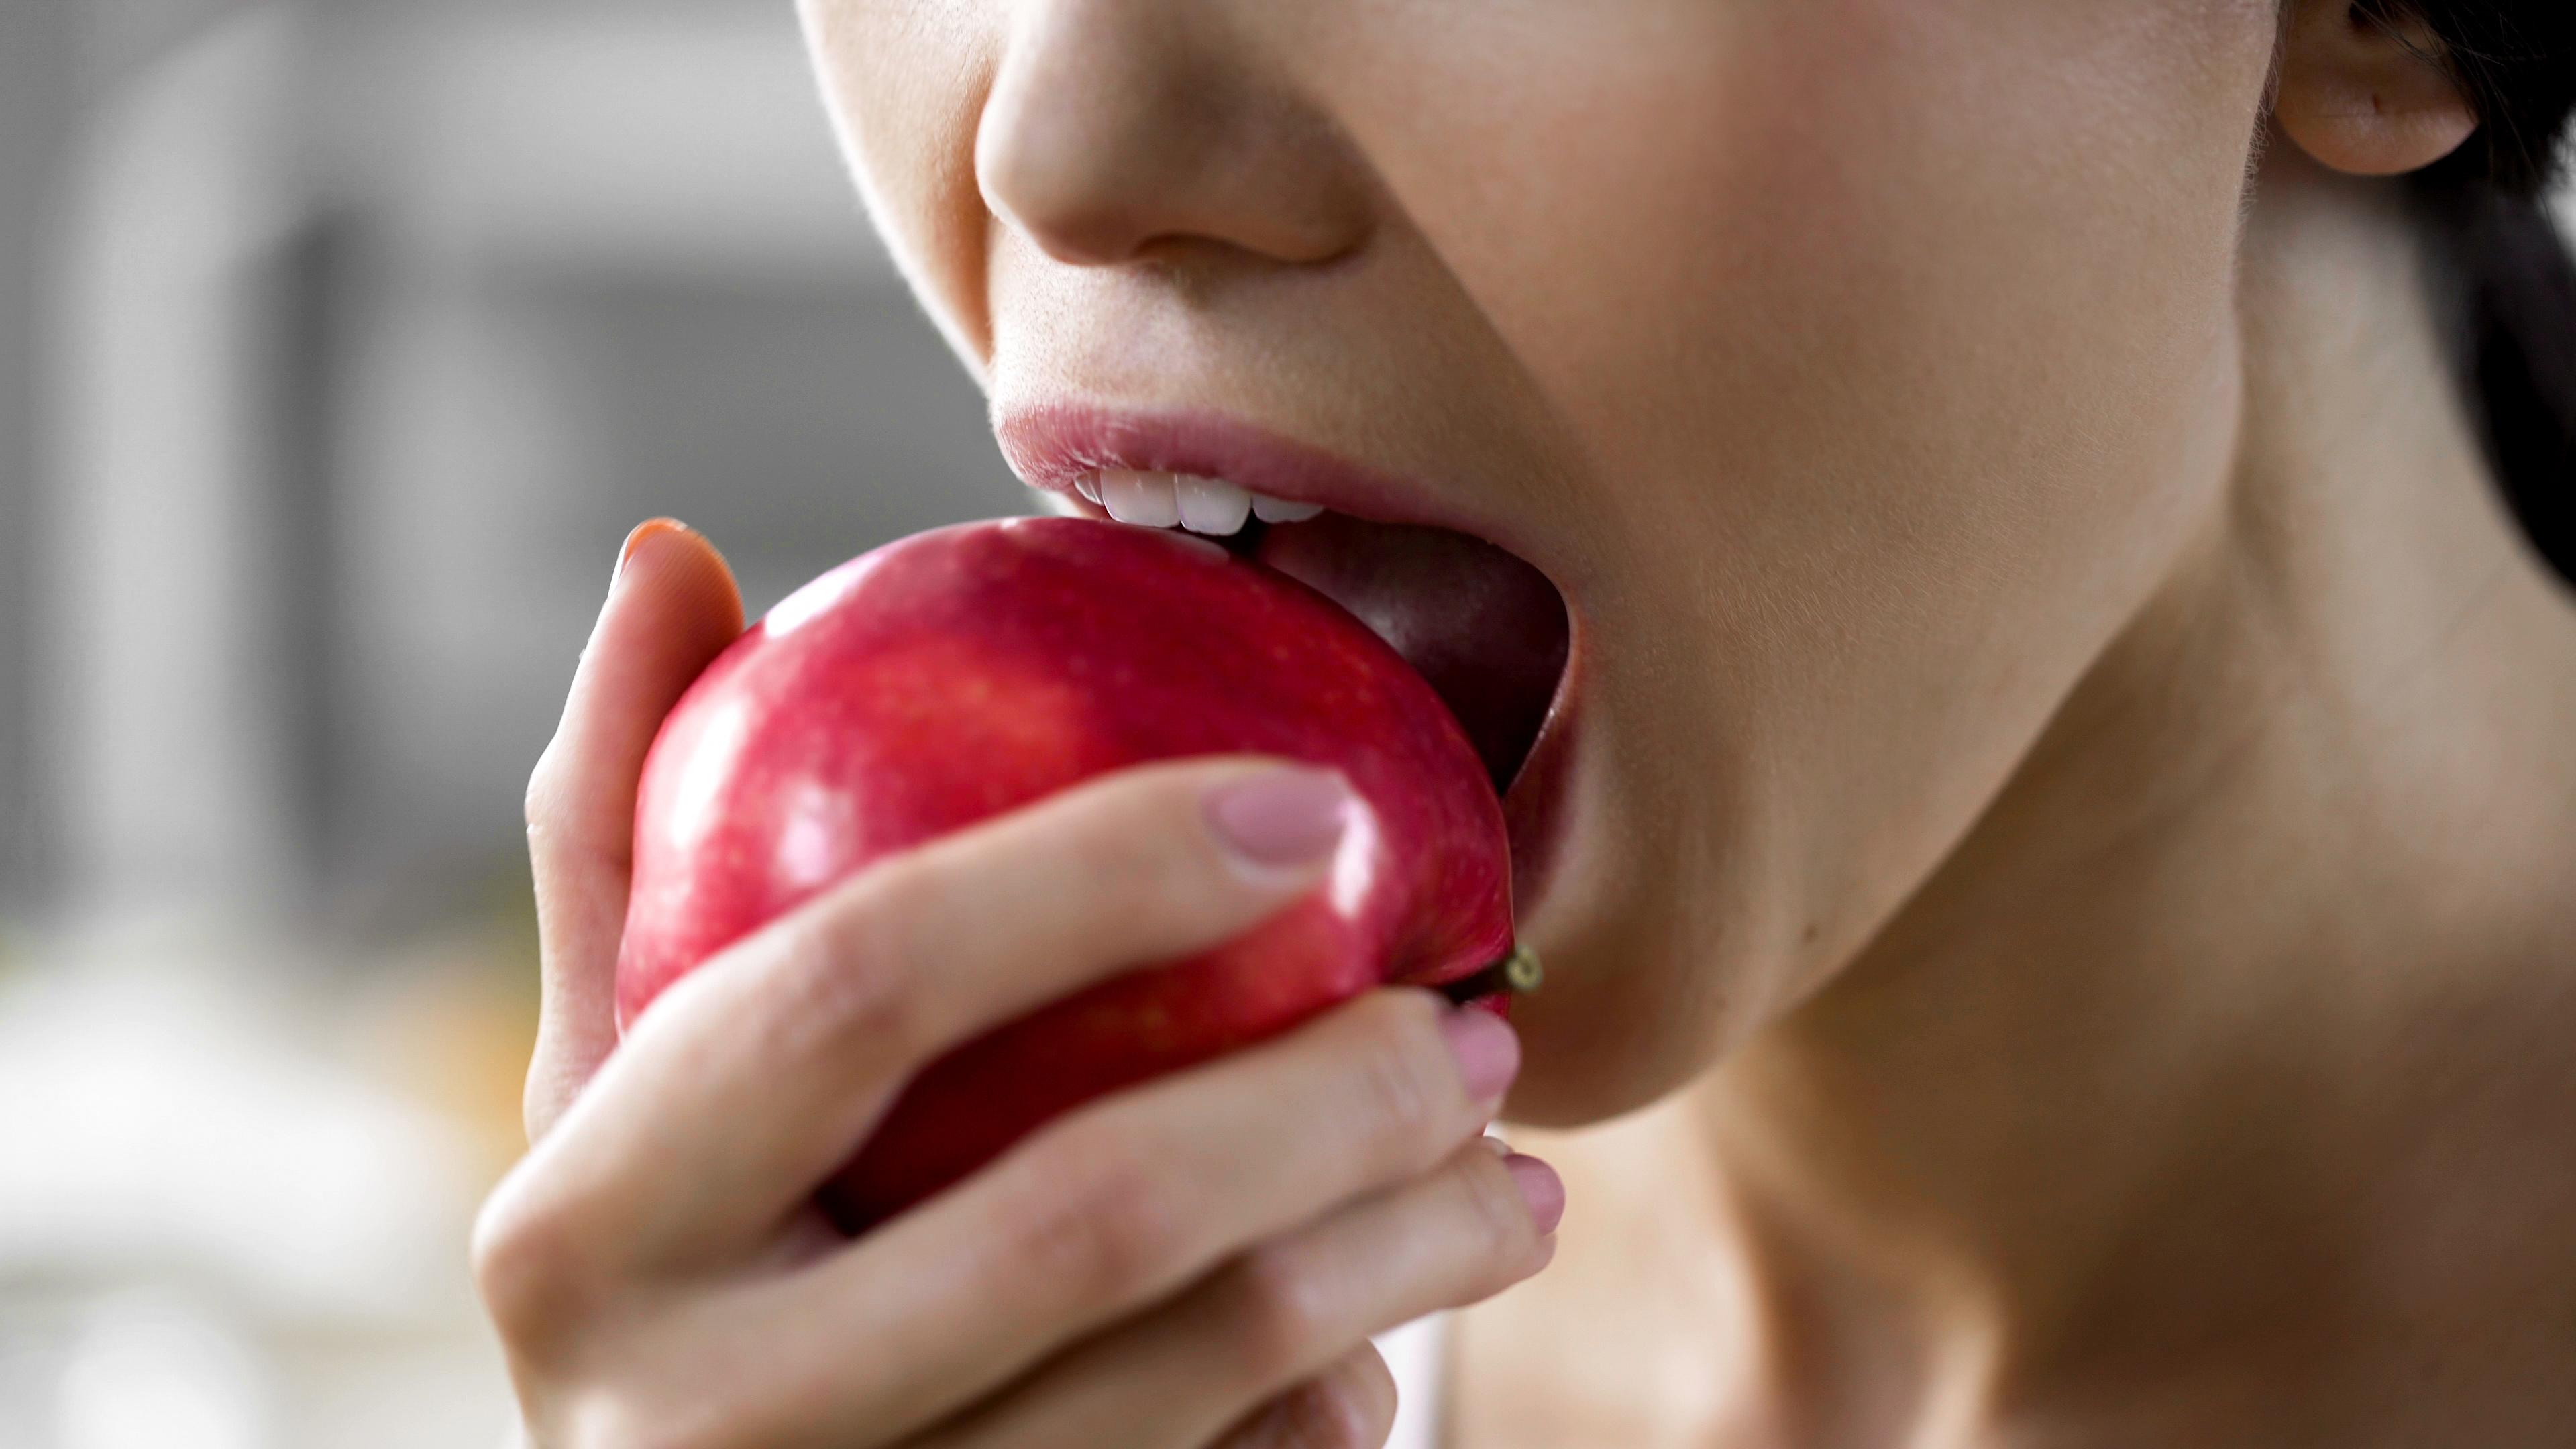 Las manzanas son ricas en vitamina C, vitamina A, hierro, potasio, fósforo, calcio y ácido fólico. Estas propiedades te ayudarán a prevenir el síndrome metabólico